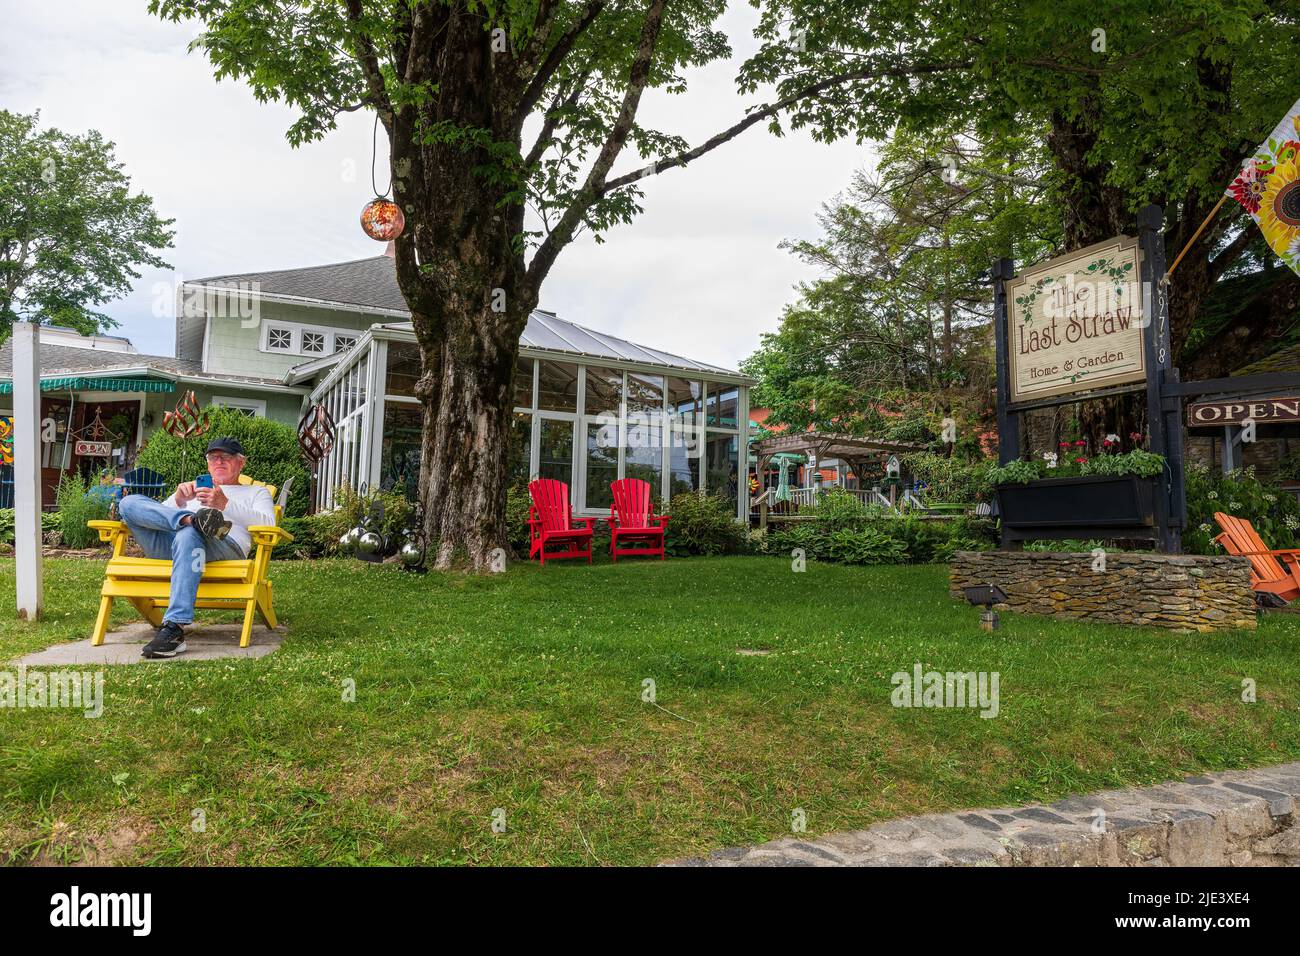 BLOWING ROCK, NC, EE.UU.-20 JUNIO de 2022: La última tienda de paja en la calle principal, muestra el edificio, la señal y un hombre en la silla de lectura de teléfono celular. Foto de stock